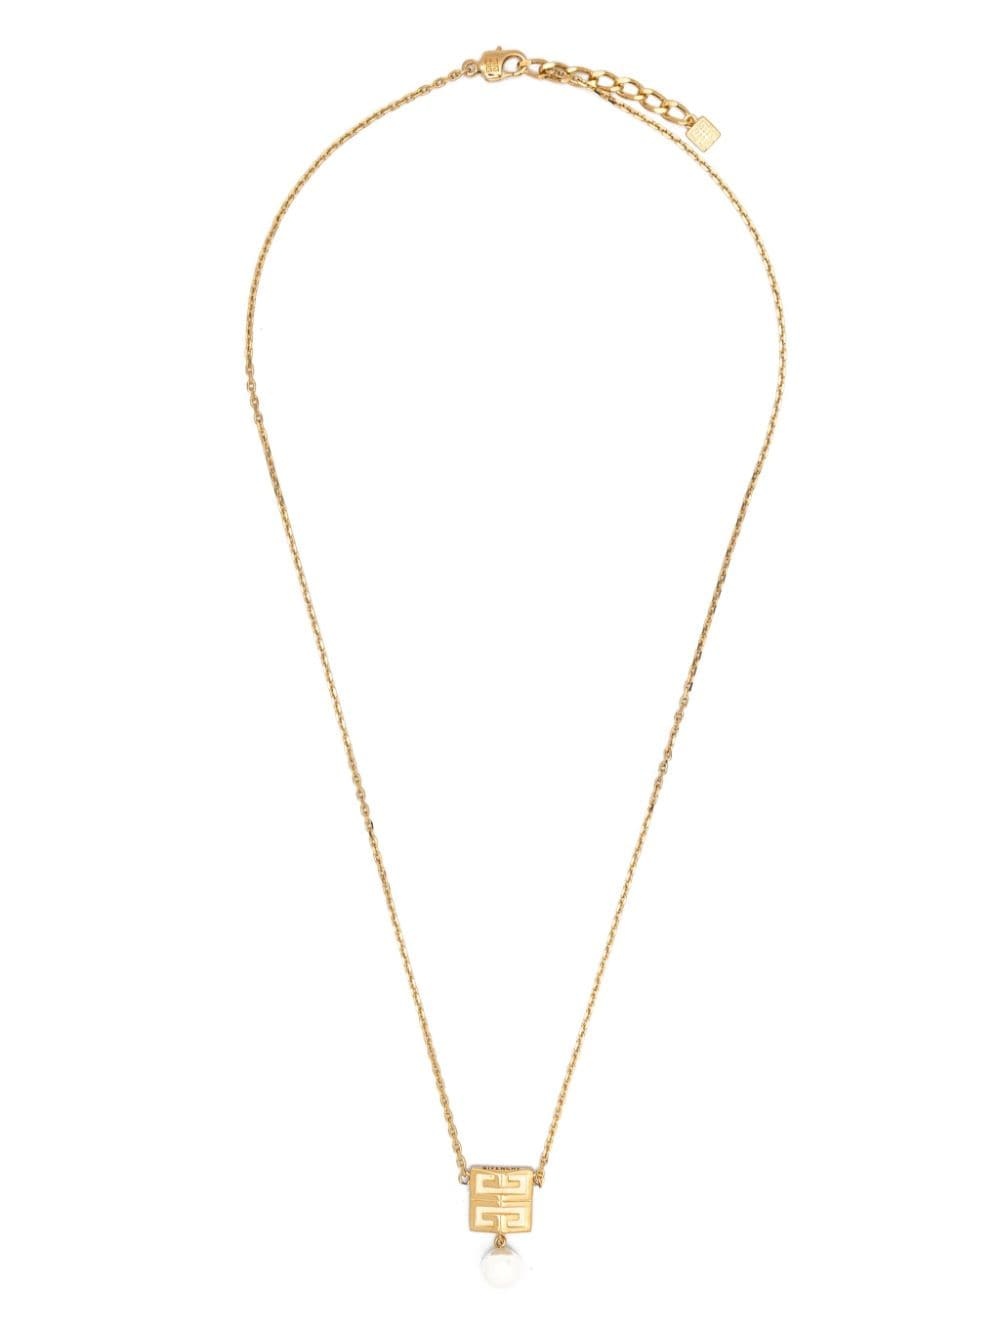 4G motif necklace - 1